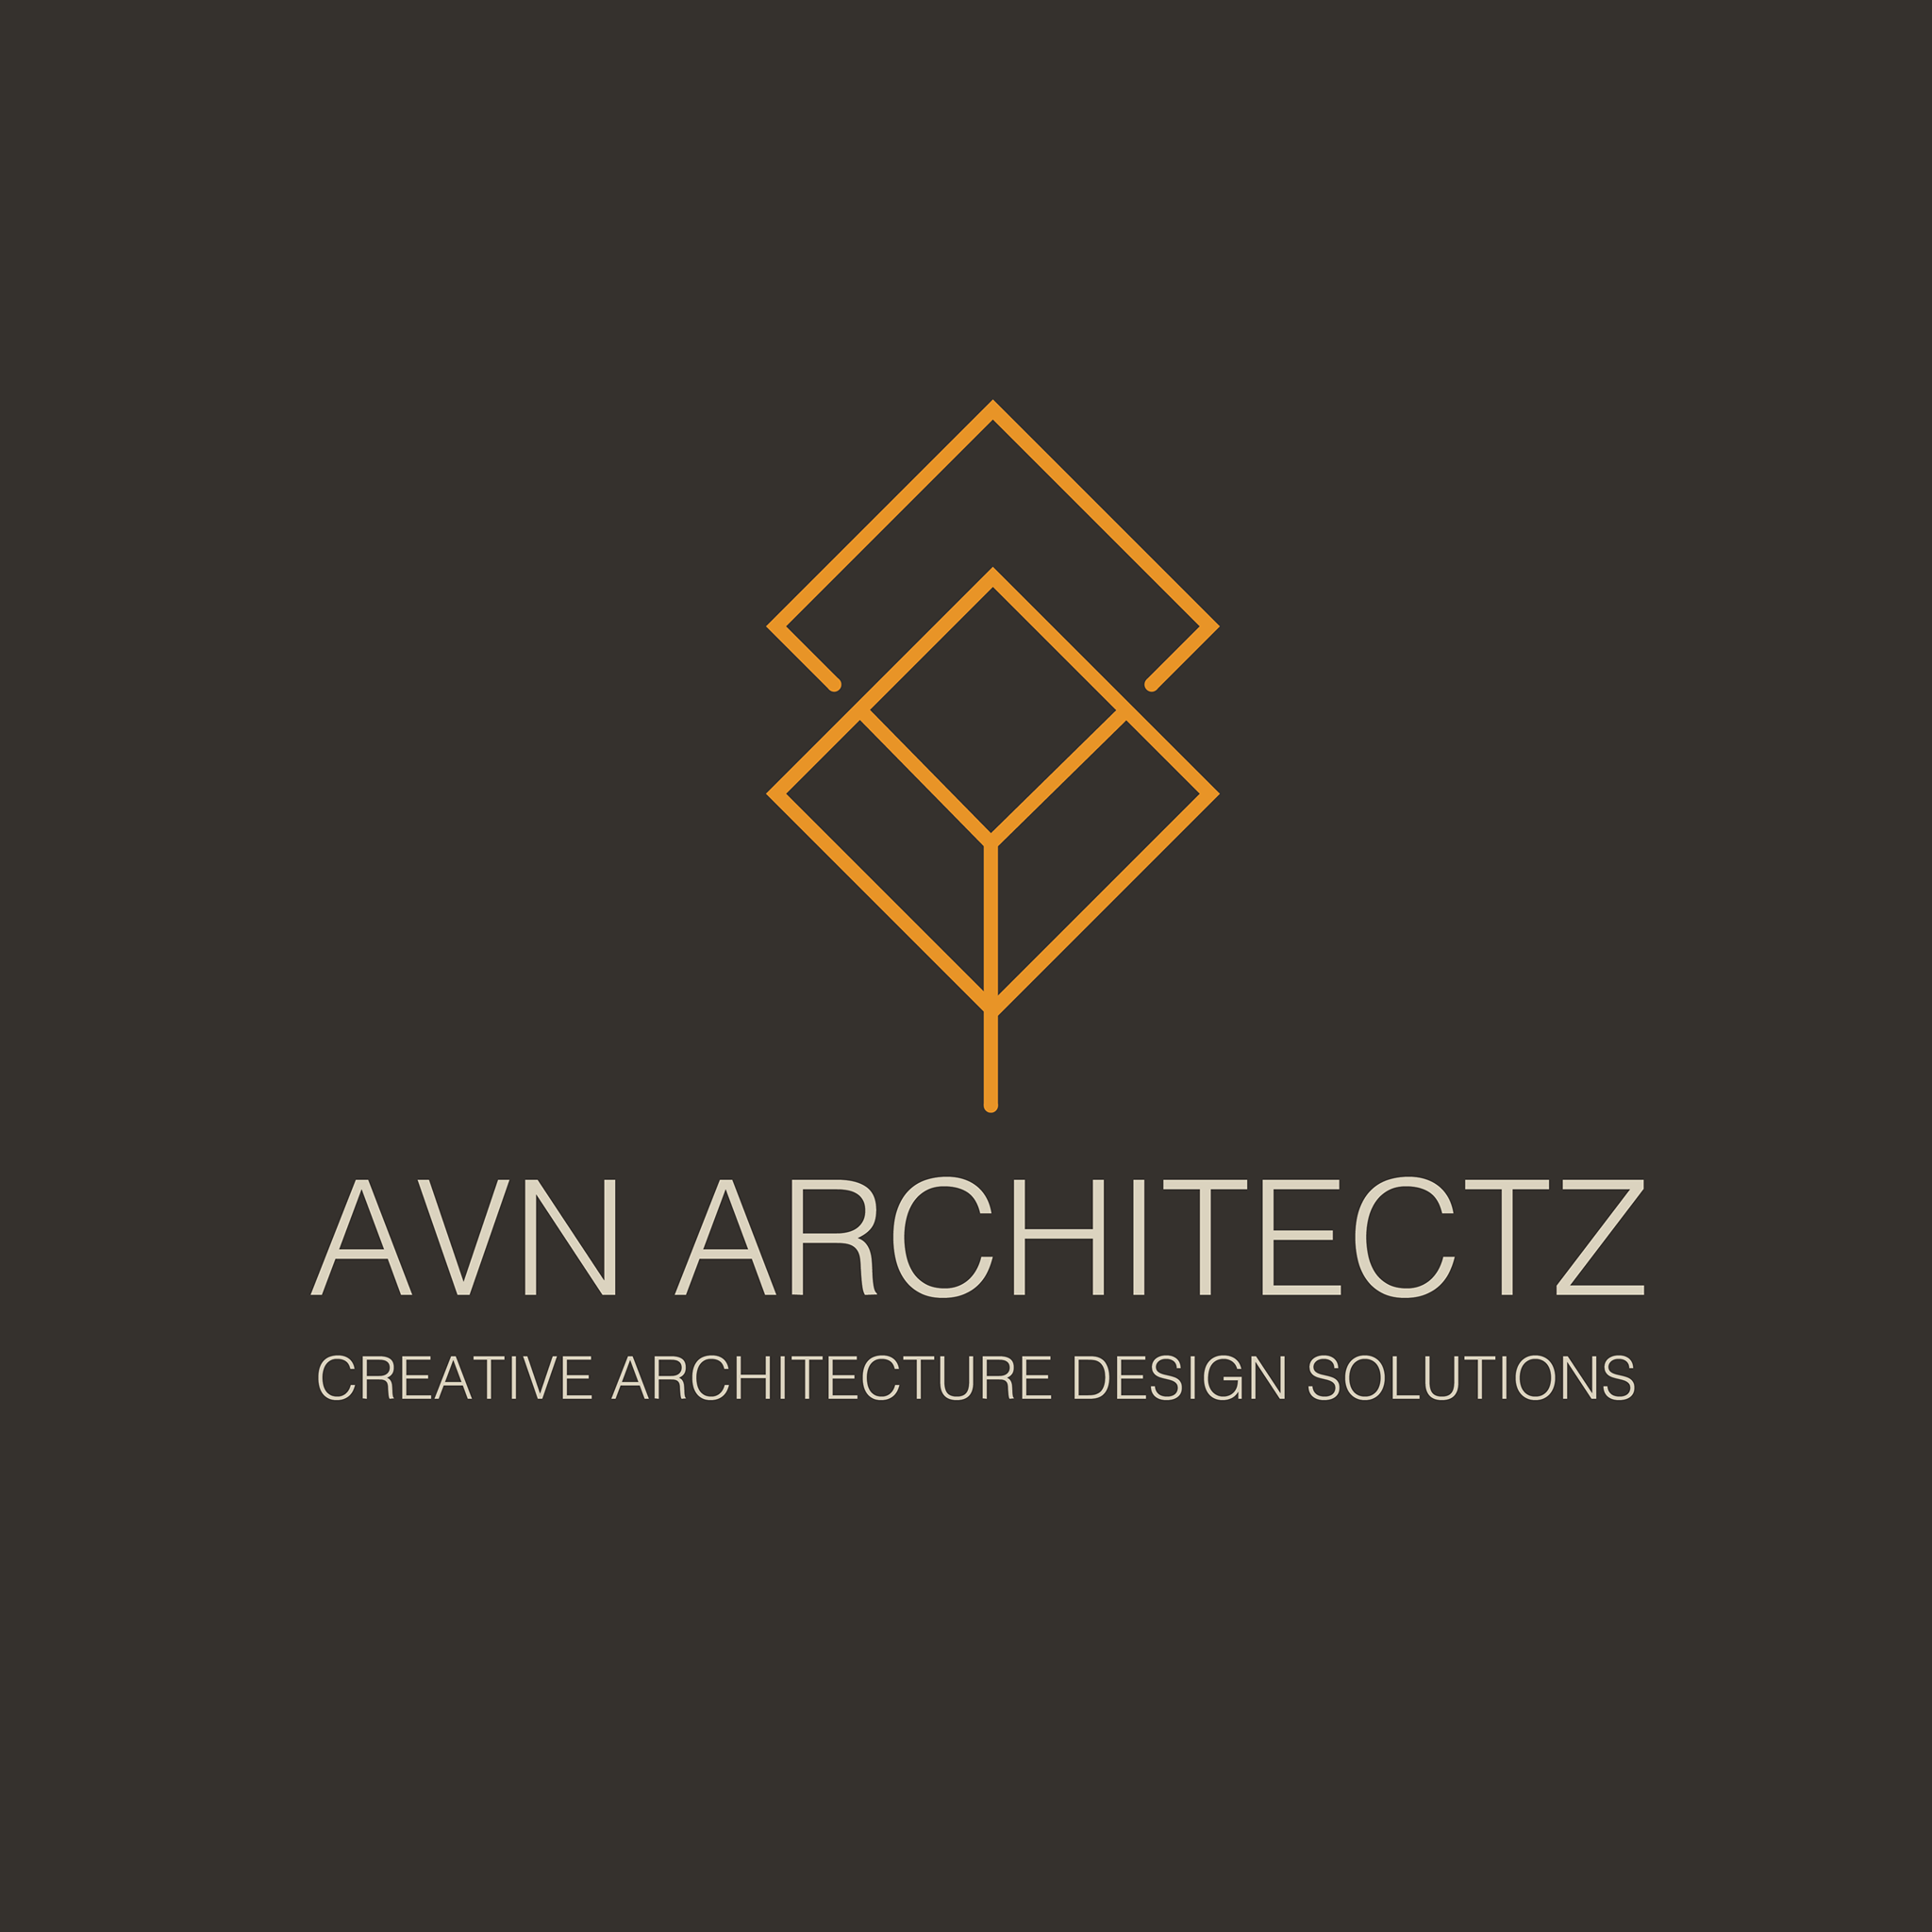 AVN Architectz|Legal Services|Professional Services